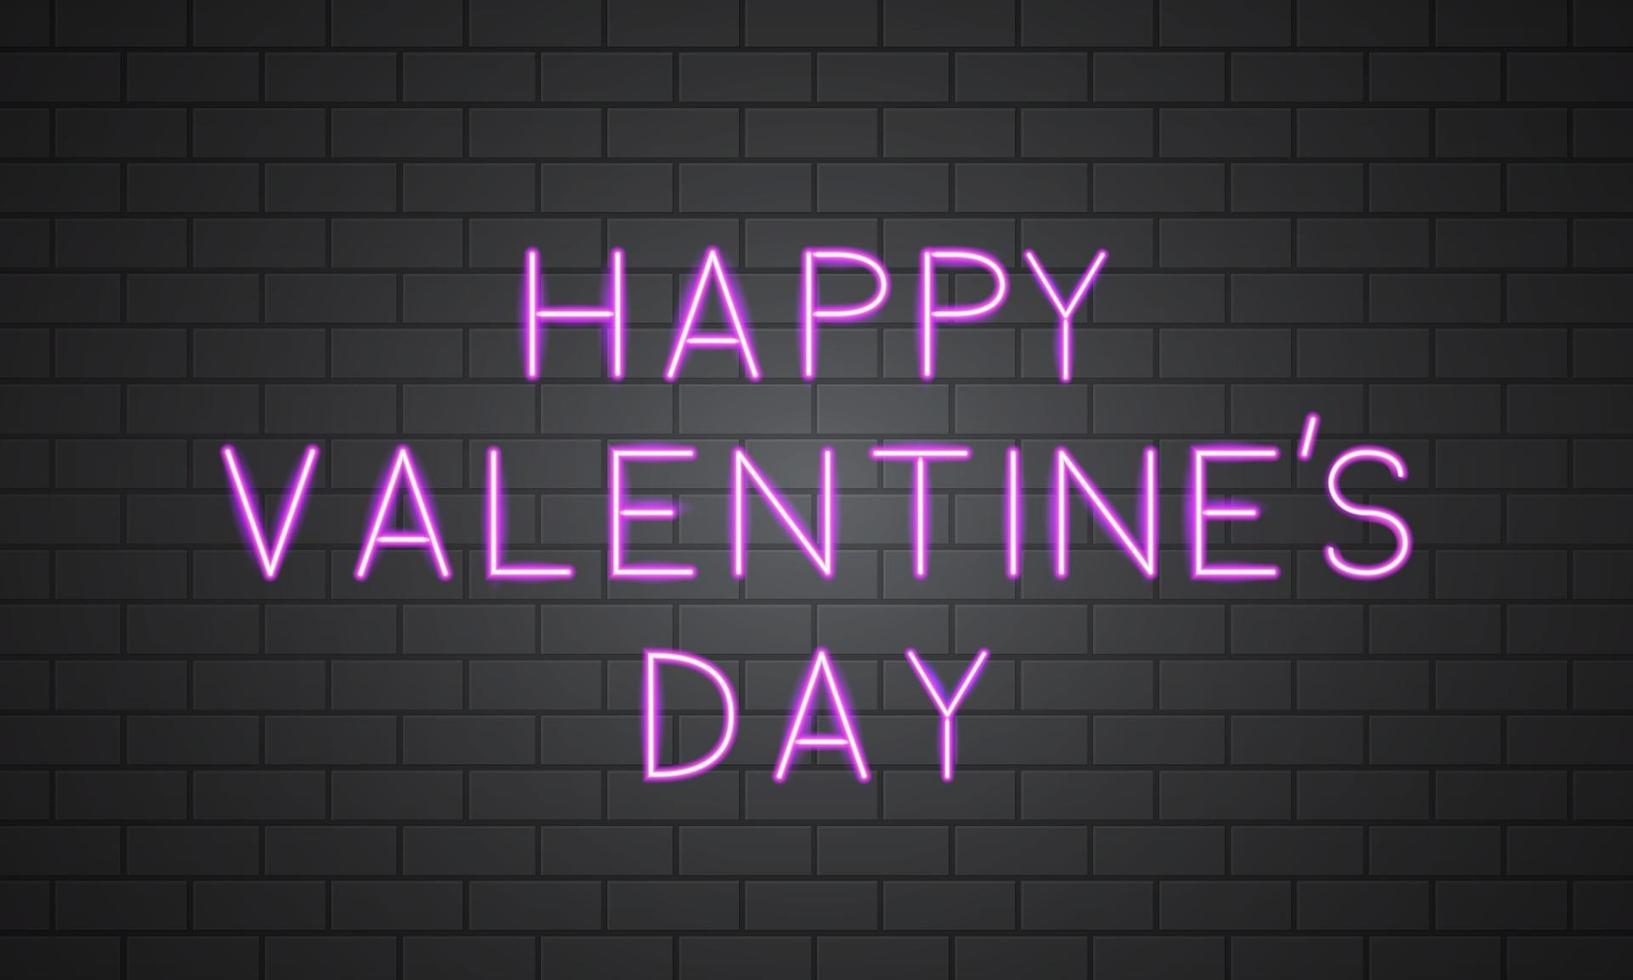 gelukkige valentijnsdag 3d neonbanner op bakstenen muur. retro bord met hete roze gloeiende tekst erop. gemakkelijk te bewerken vectorsjabloon voor Valentijnsdag wenskaart, uitnodiging voor feest, flyer, poster enz. vector